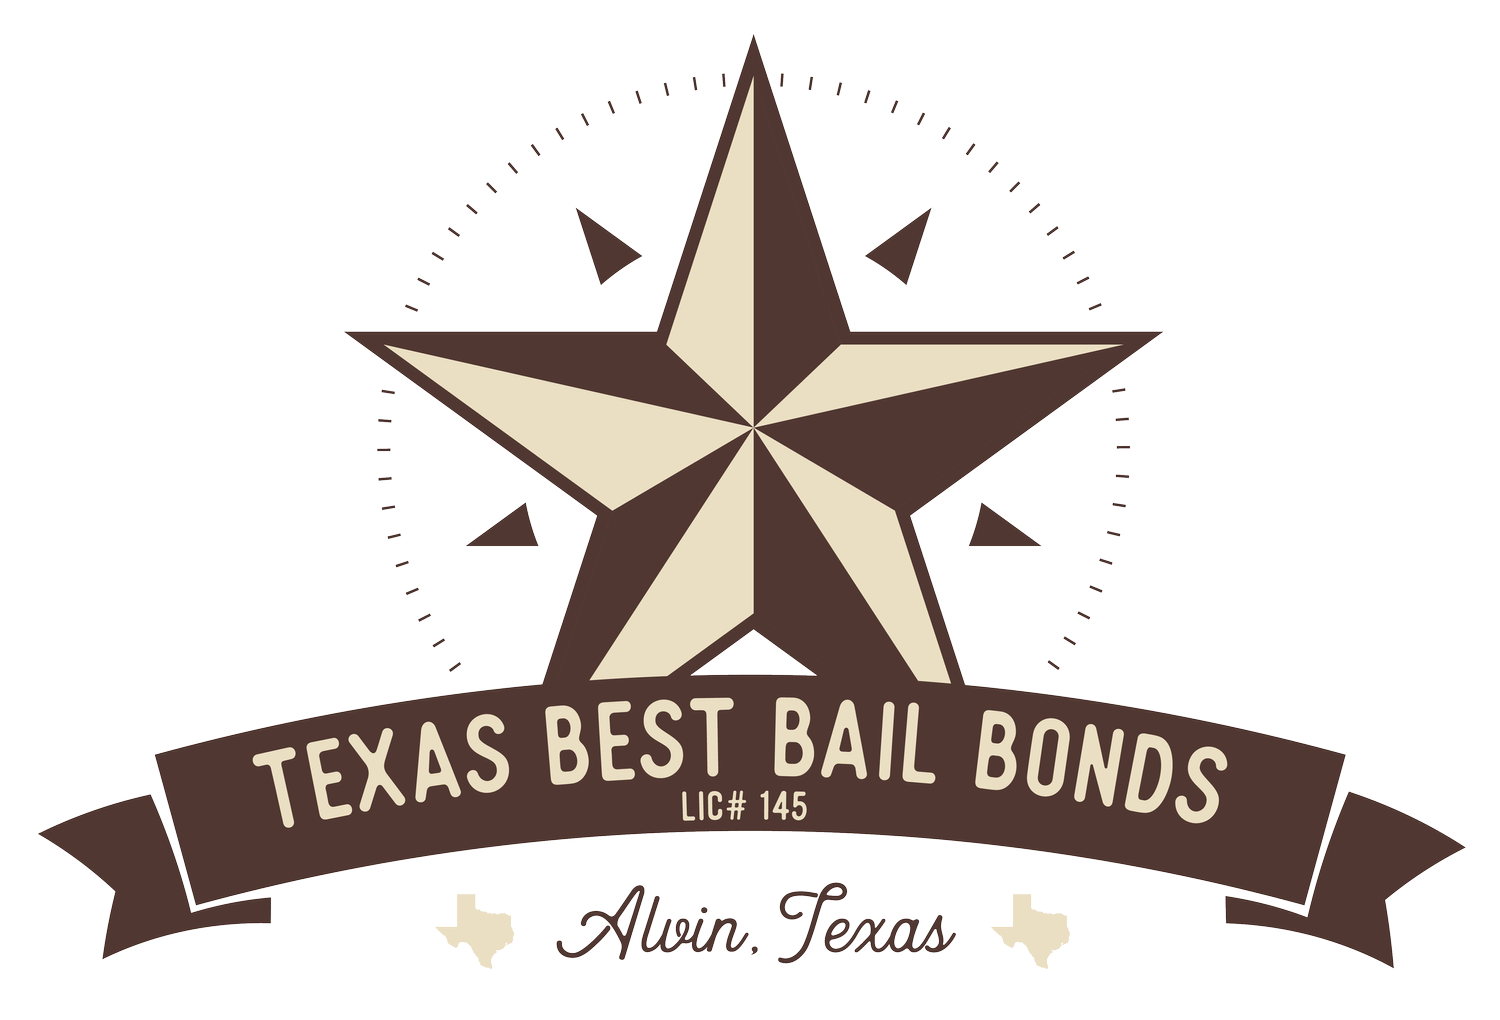 Texas Best Bail Bonds